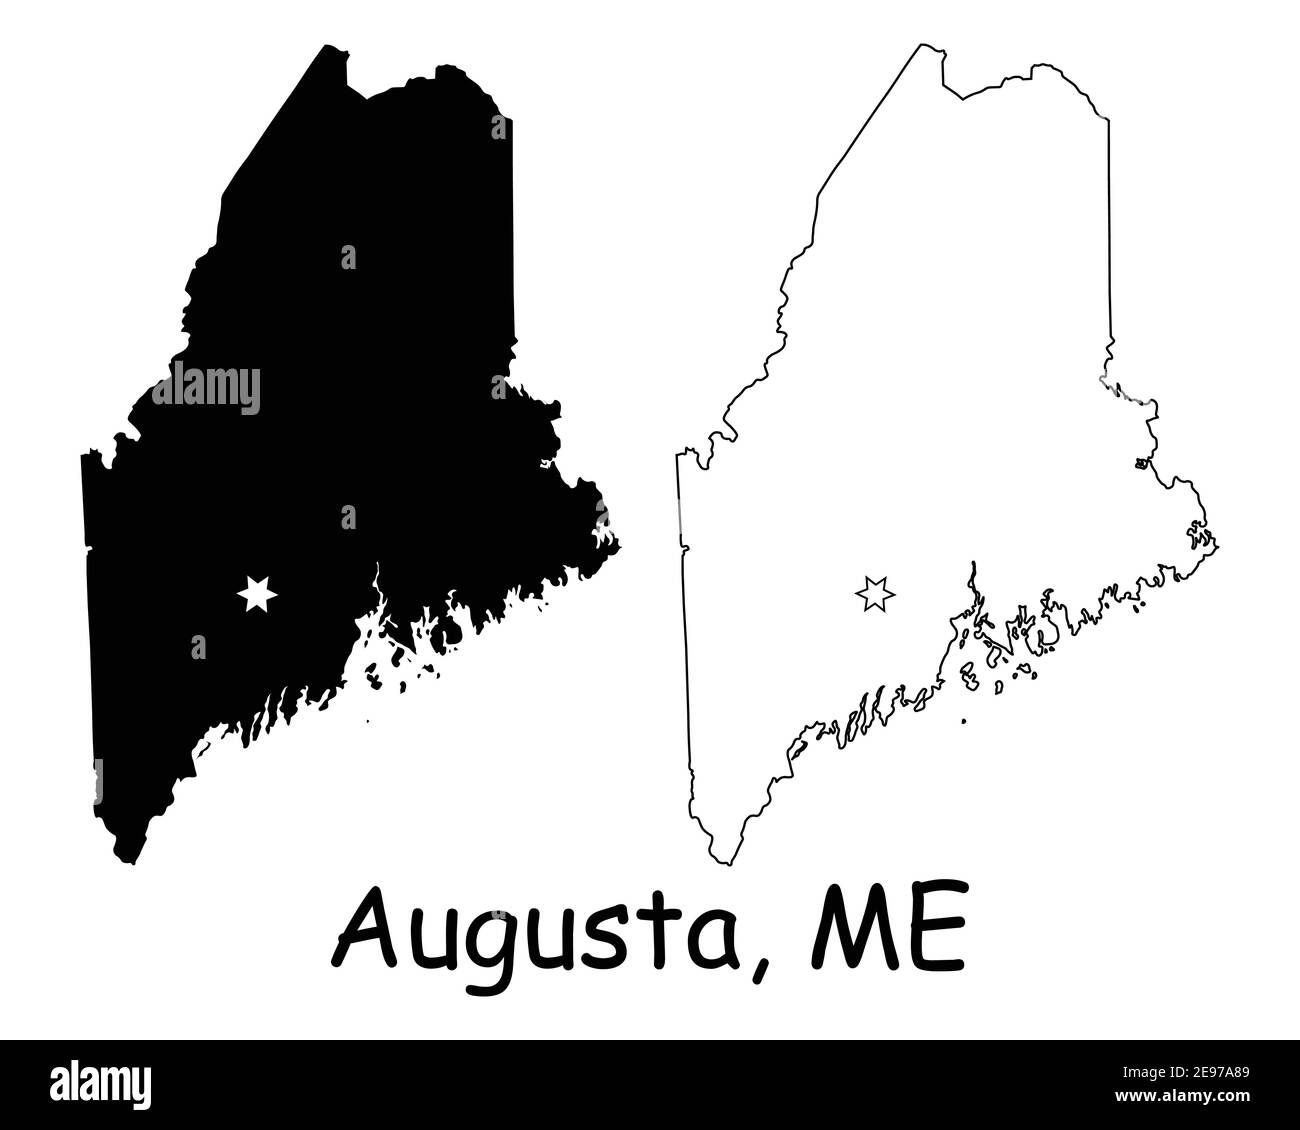 Maine ME State Map USA mit Capital City Star in Augusta. Schwarze Silhouette und Umriss isoliert auf weißem Hintergrund. EPS-Vektor Stock Vektor